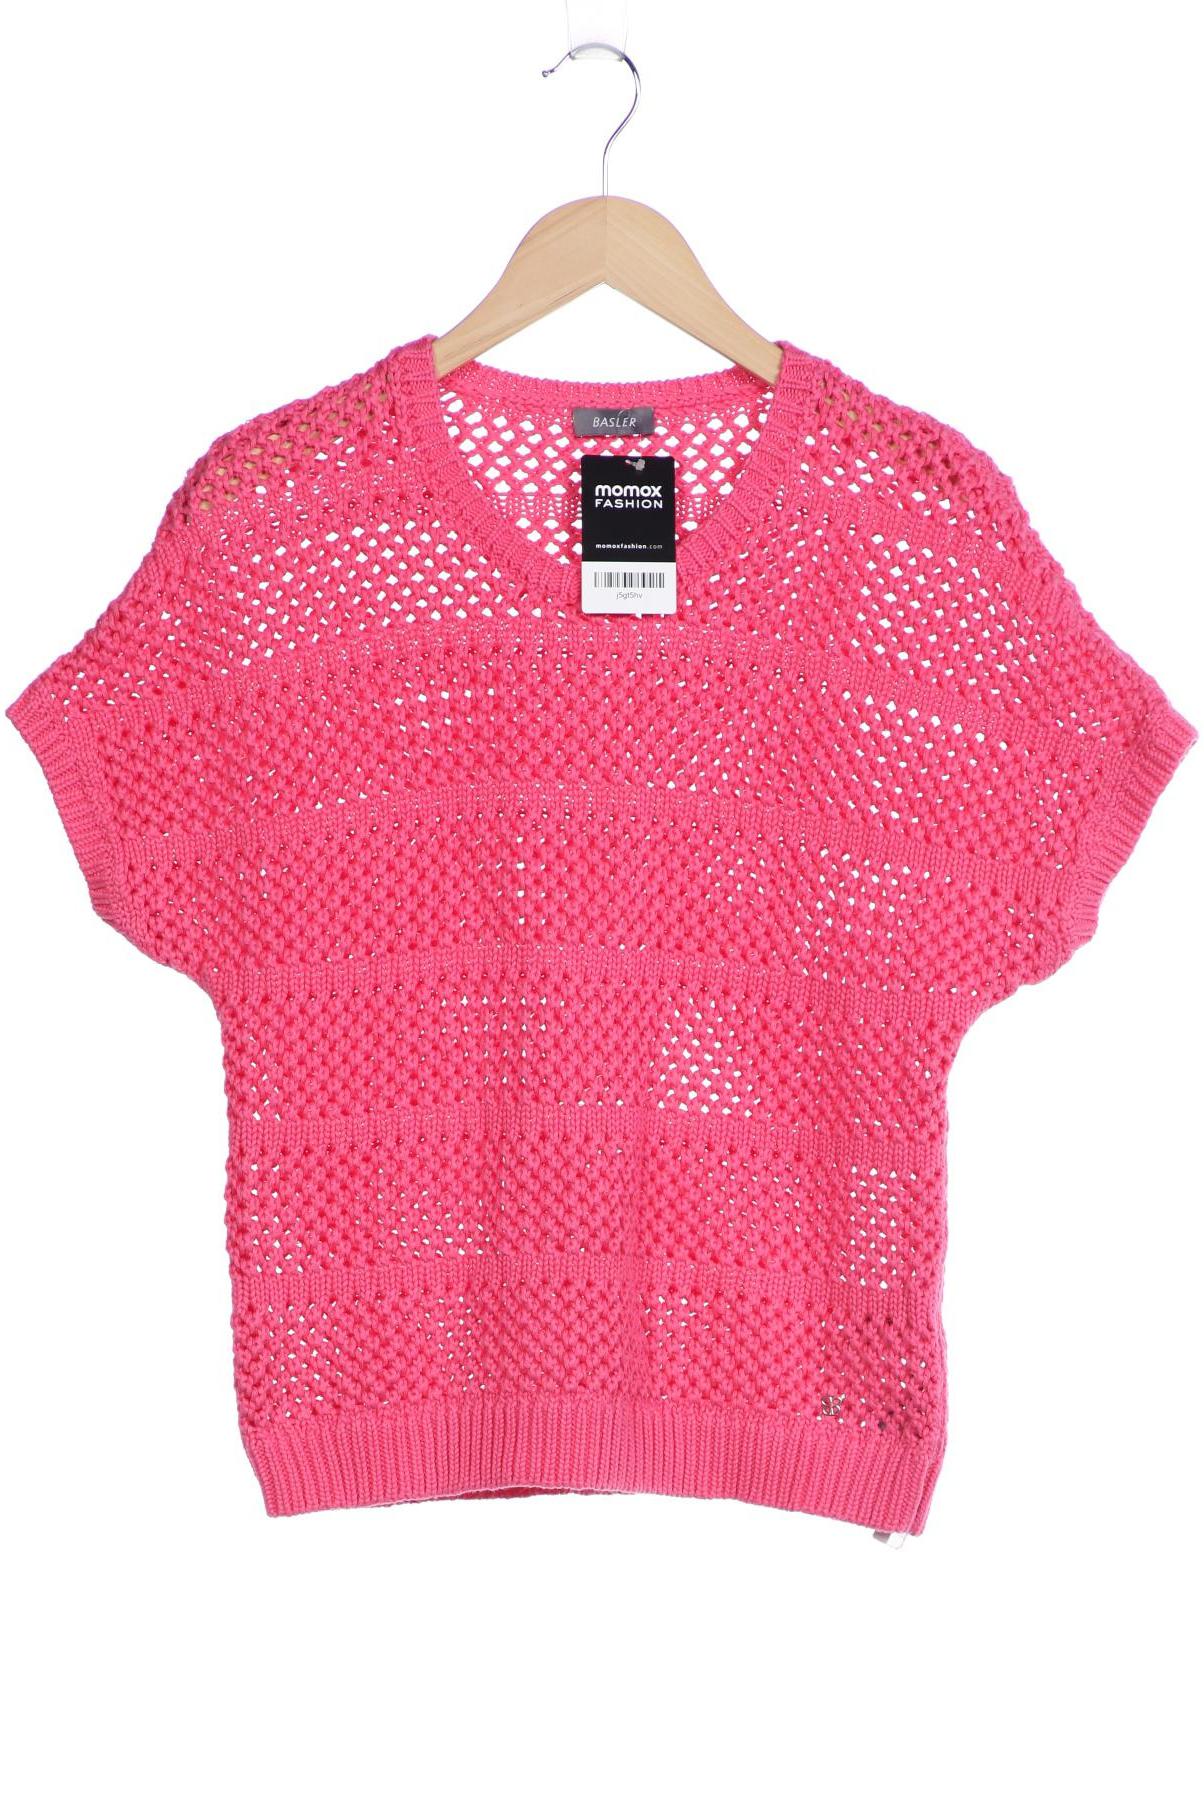 Basler Damen Pullover, pink von Basler